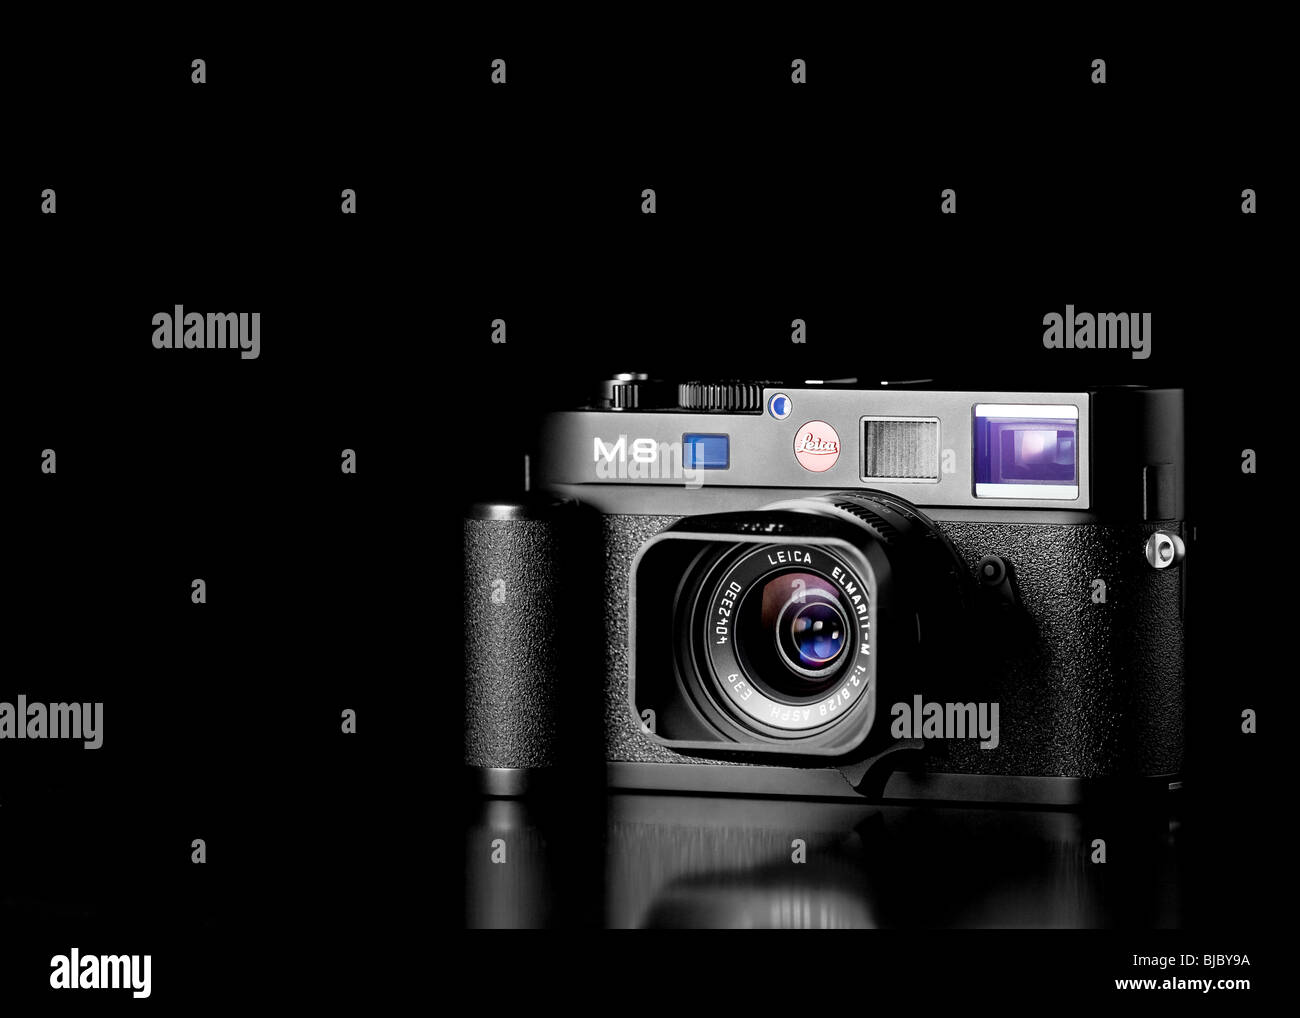 Black studio fotografía de un telémetro digital Leica M8 con empuñadura de cámara y lente de 28mm Elmarit Foto de stock